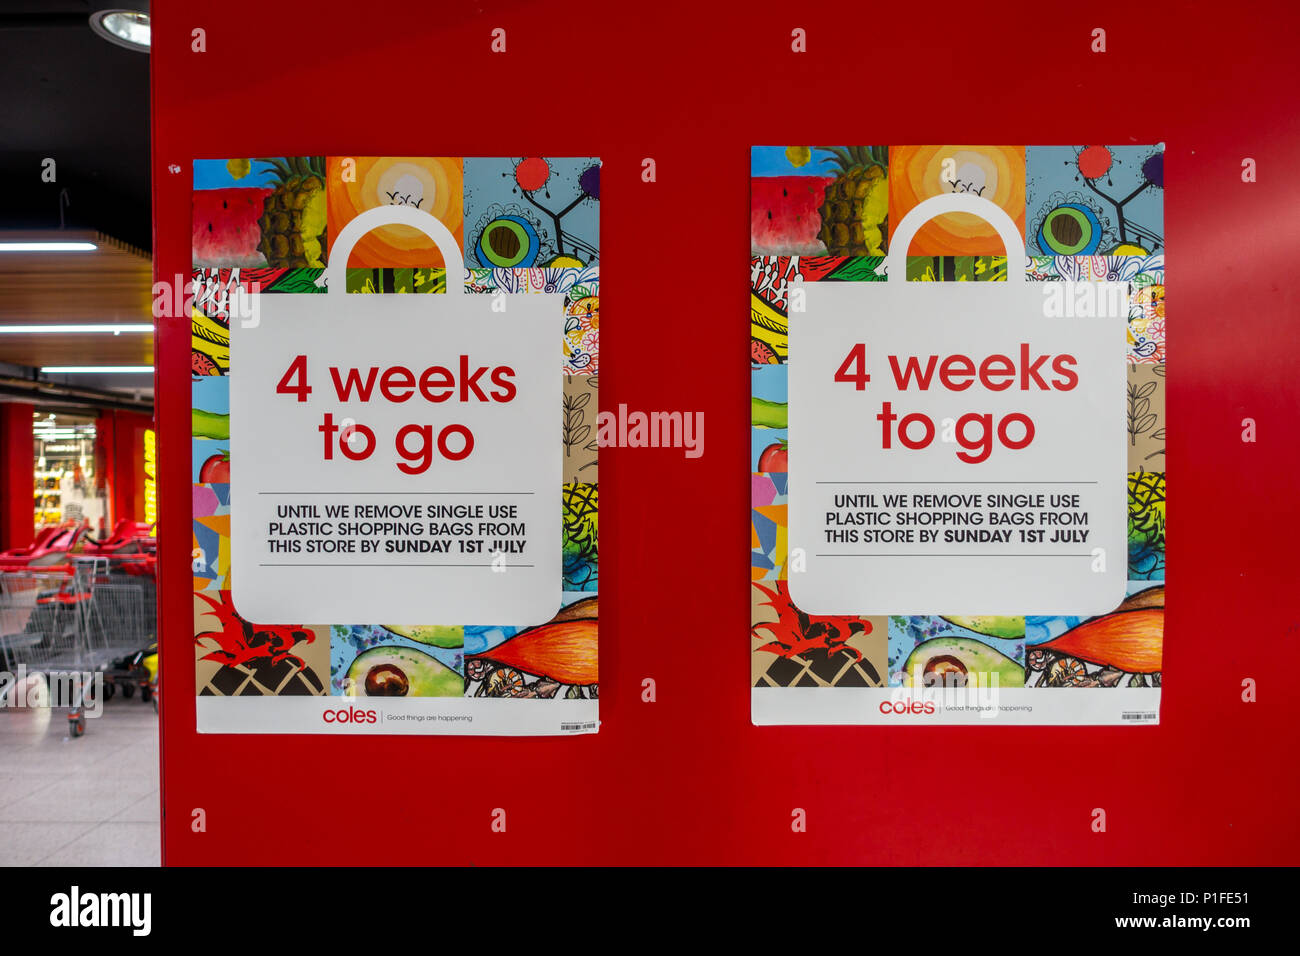 Plakat außerhalb Coles Supermarkt den Countdown für das Entfernen einzelner - Kunststoff Einkaufstaschen am 1. Juli 2018 bekannt geben zu können. Melbourne, Australien Stockfoto